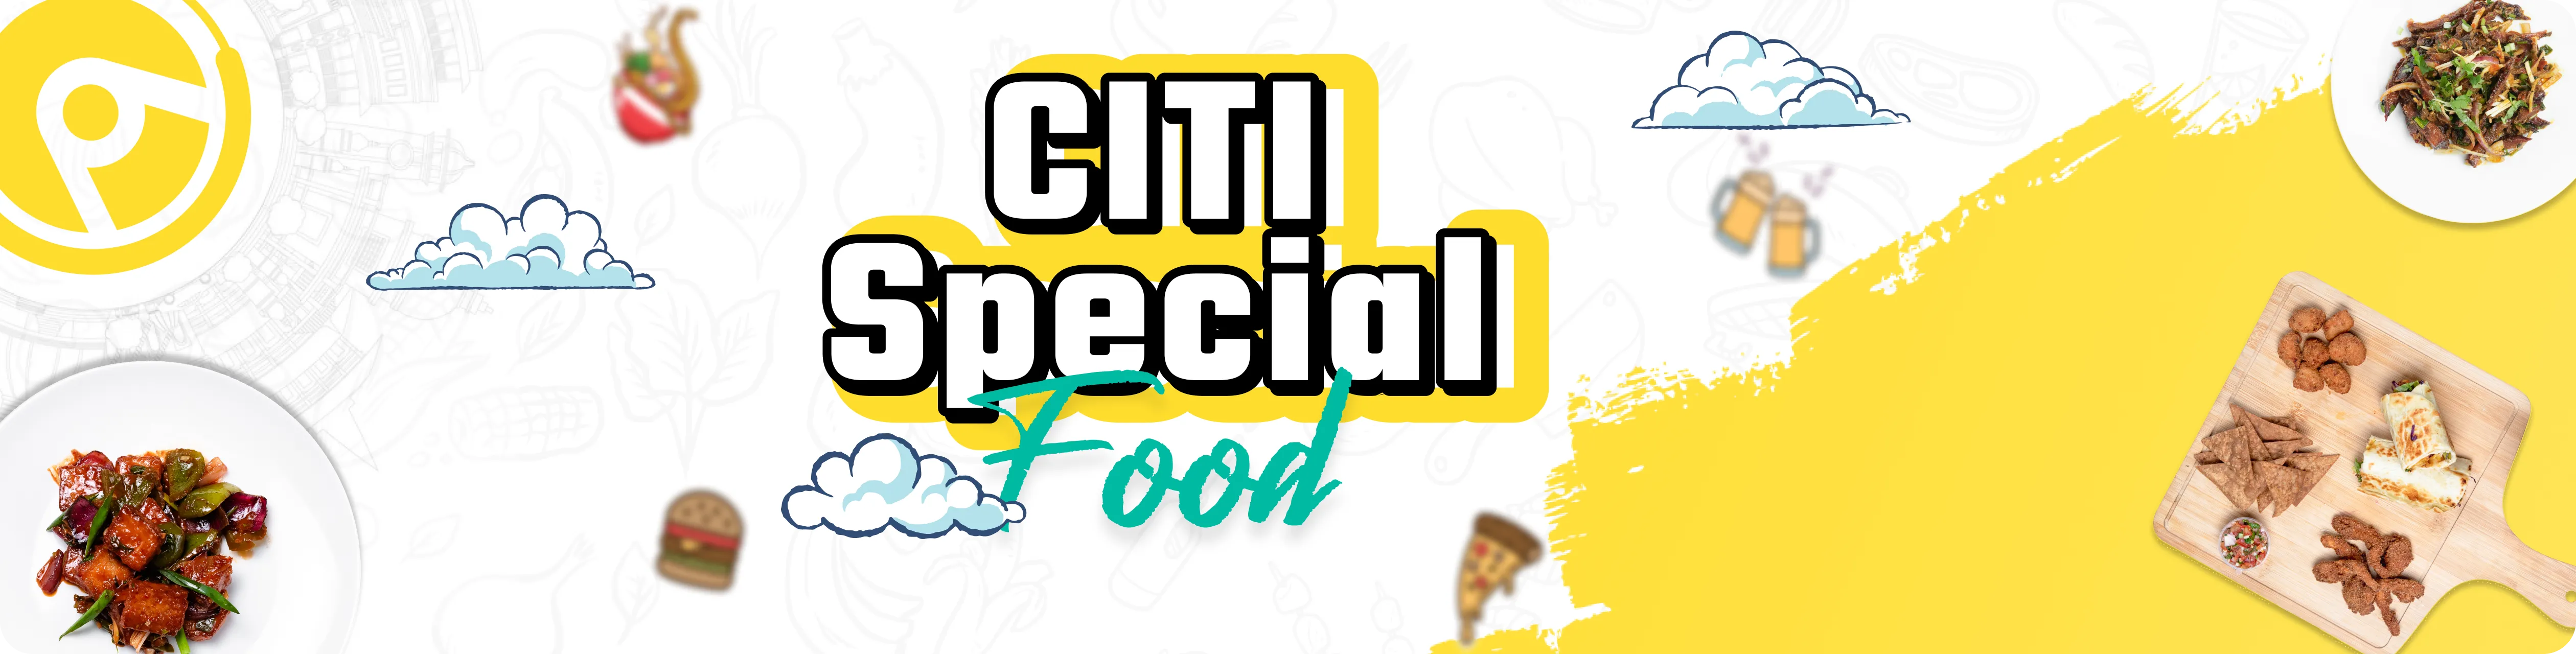 Citi Special Foods